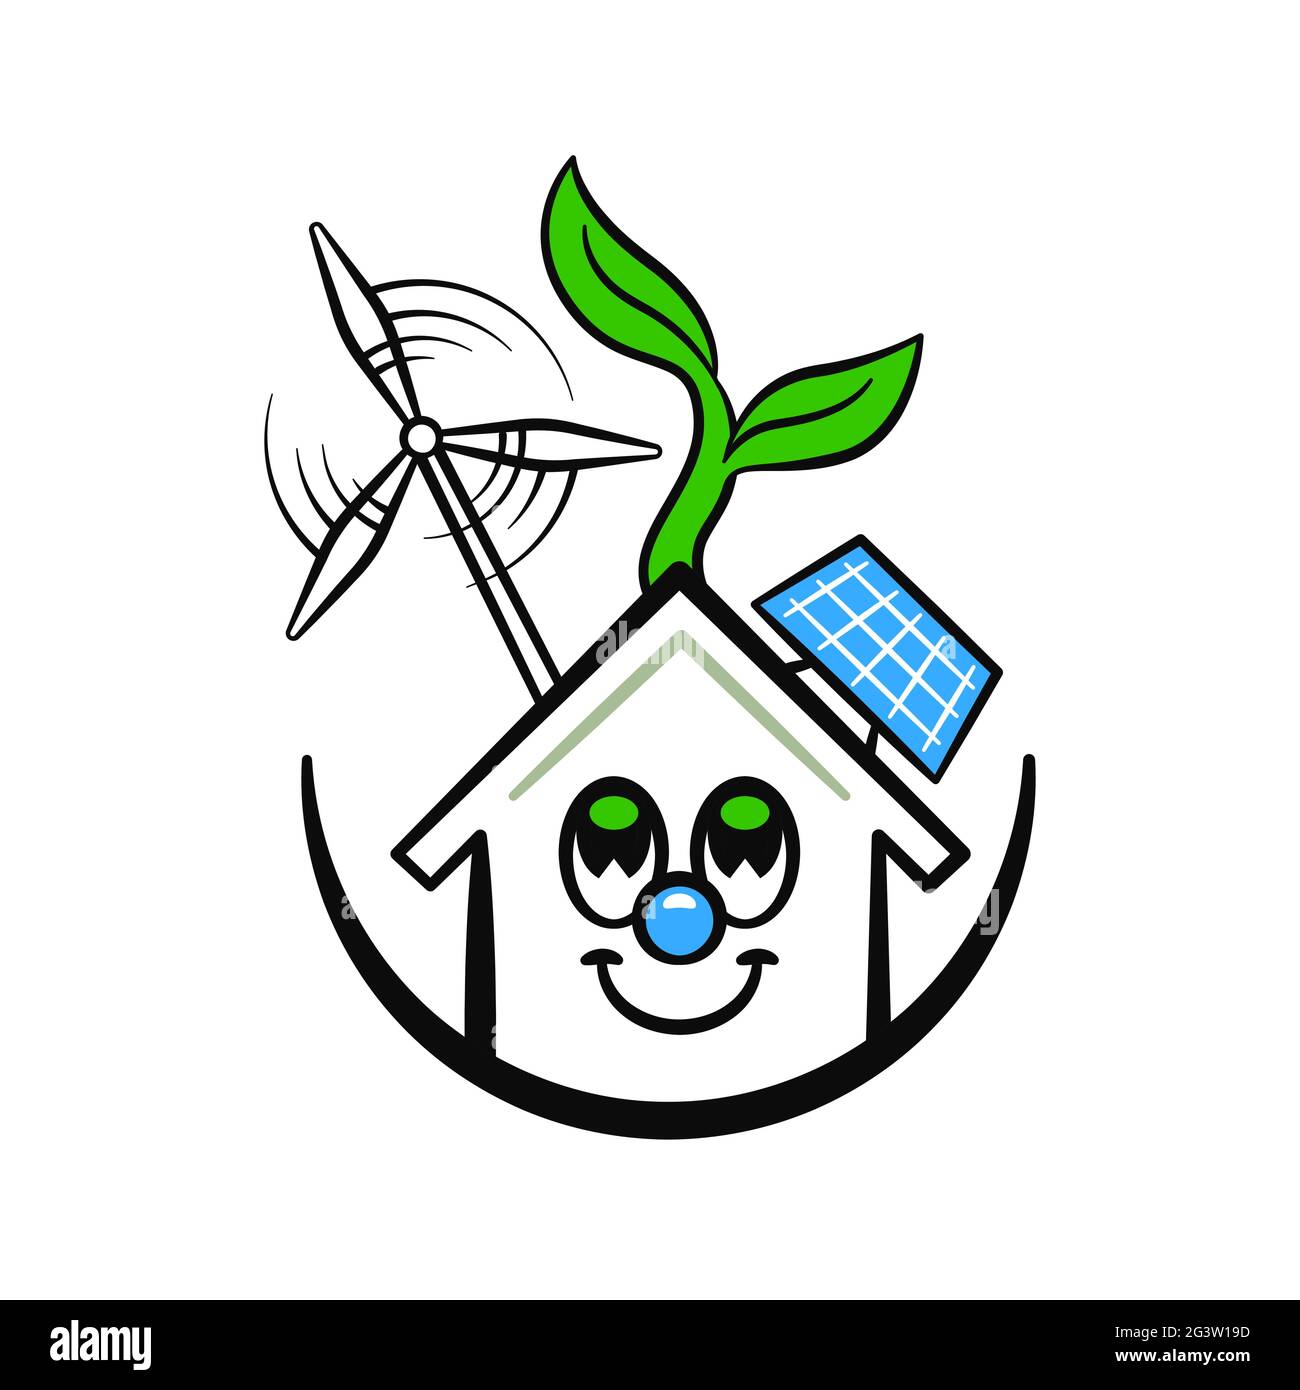 Concetto di illustrazione eco-house. Divertente simpatico personaggio cartoon di casa moderna verde con tecnologia a energia pulita su sfondo bianco isolato. Illustrazione Vettoriale